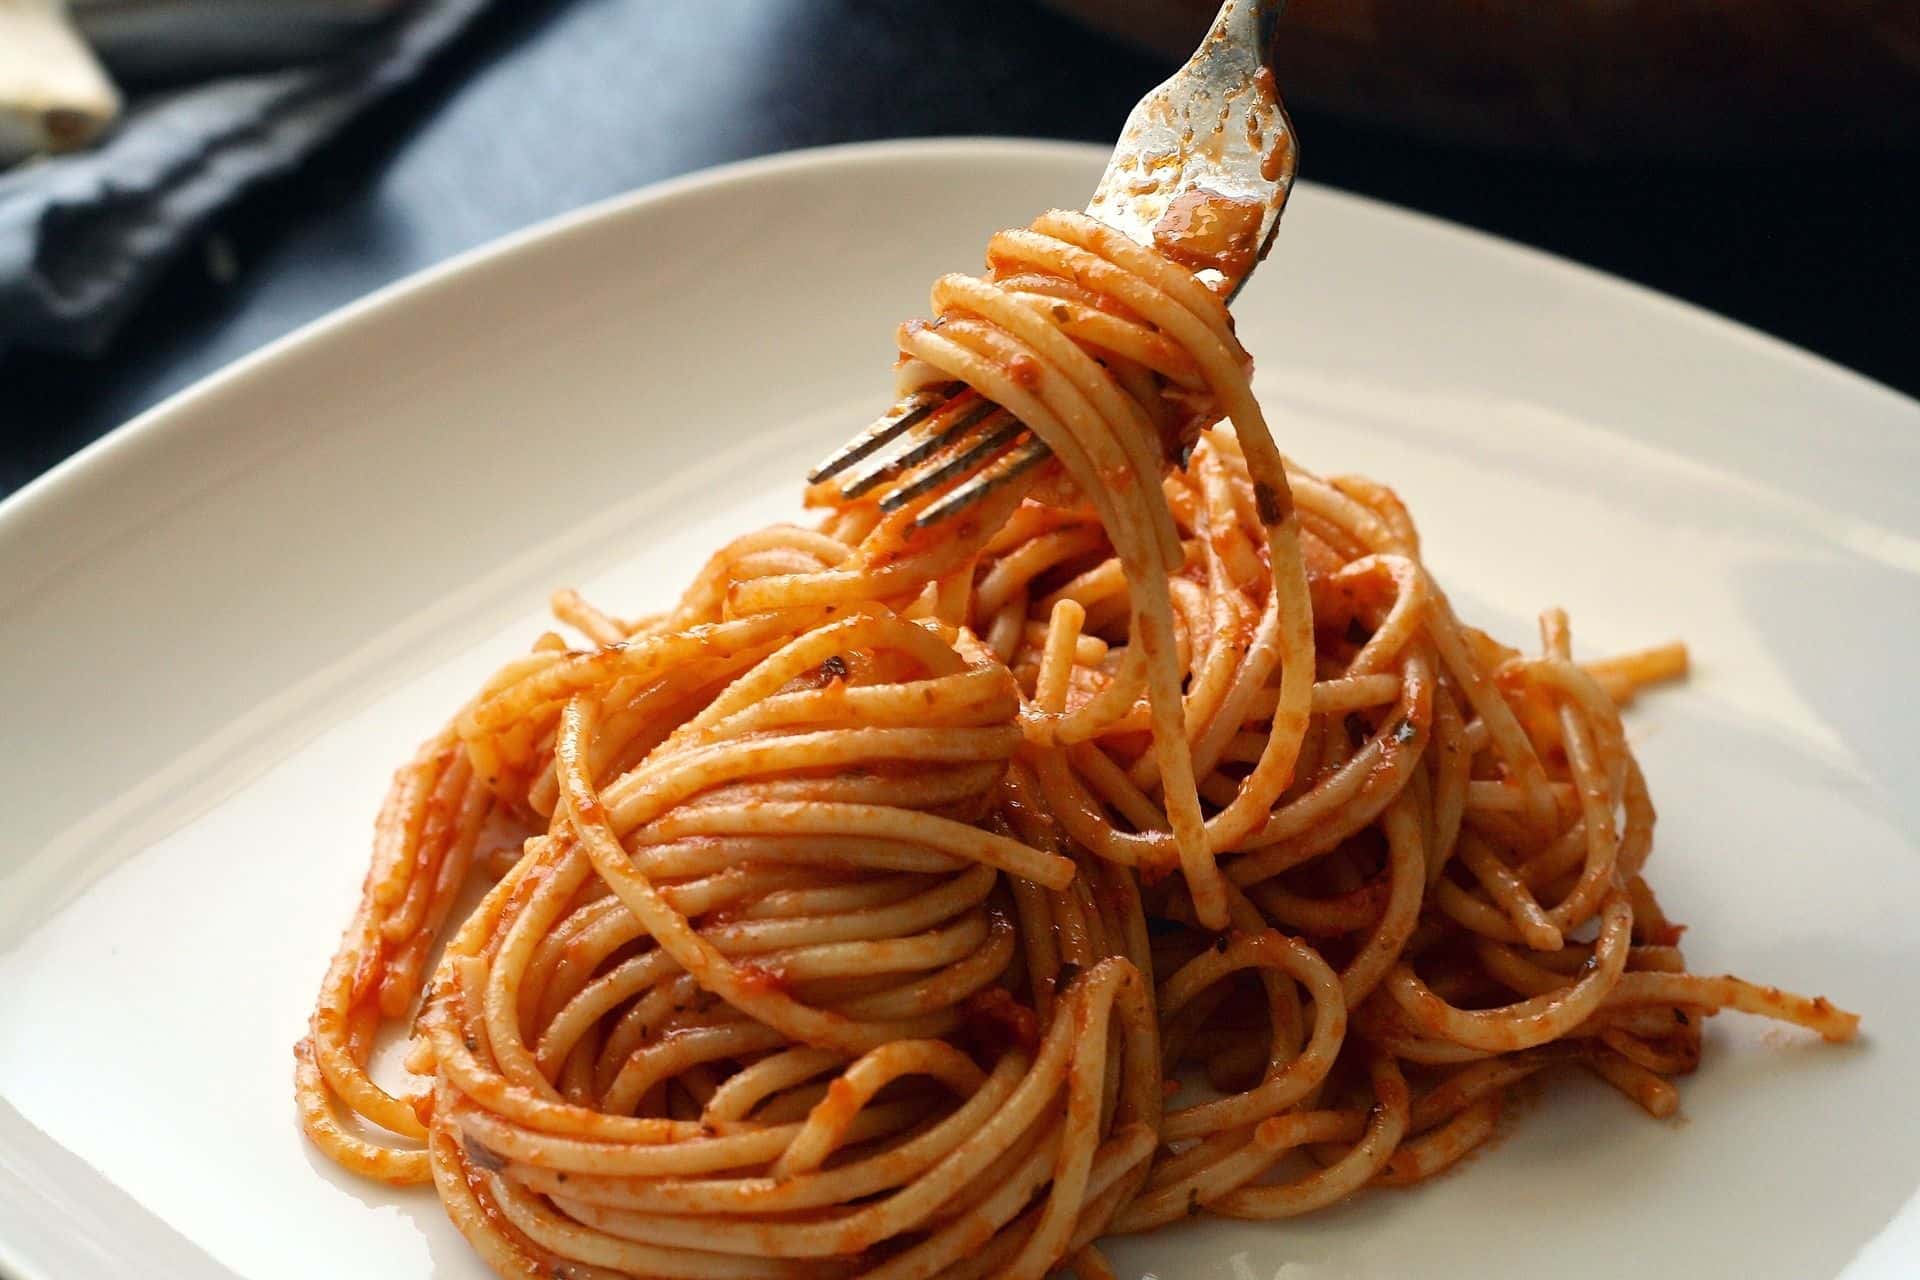 פסטה היא אחד המאכלים האהובים ברחבי העולם והספגטי בראש. צילום pixabay